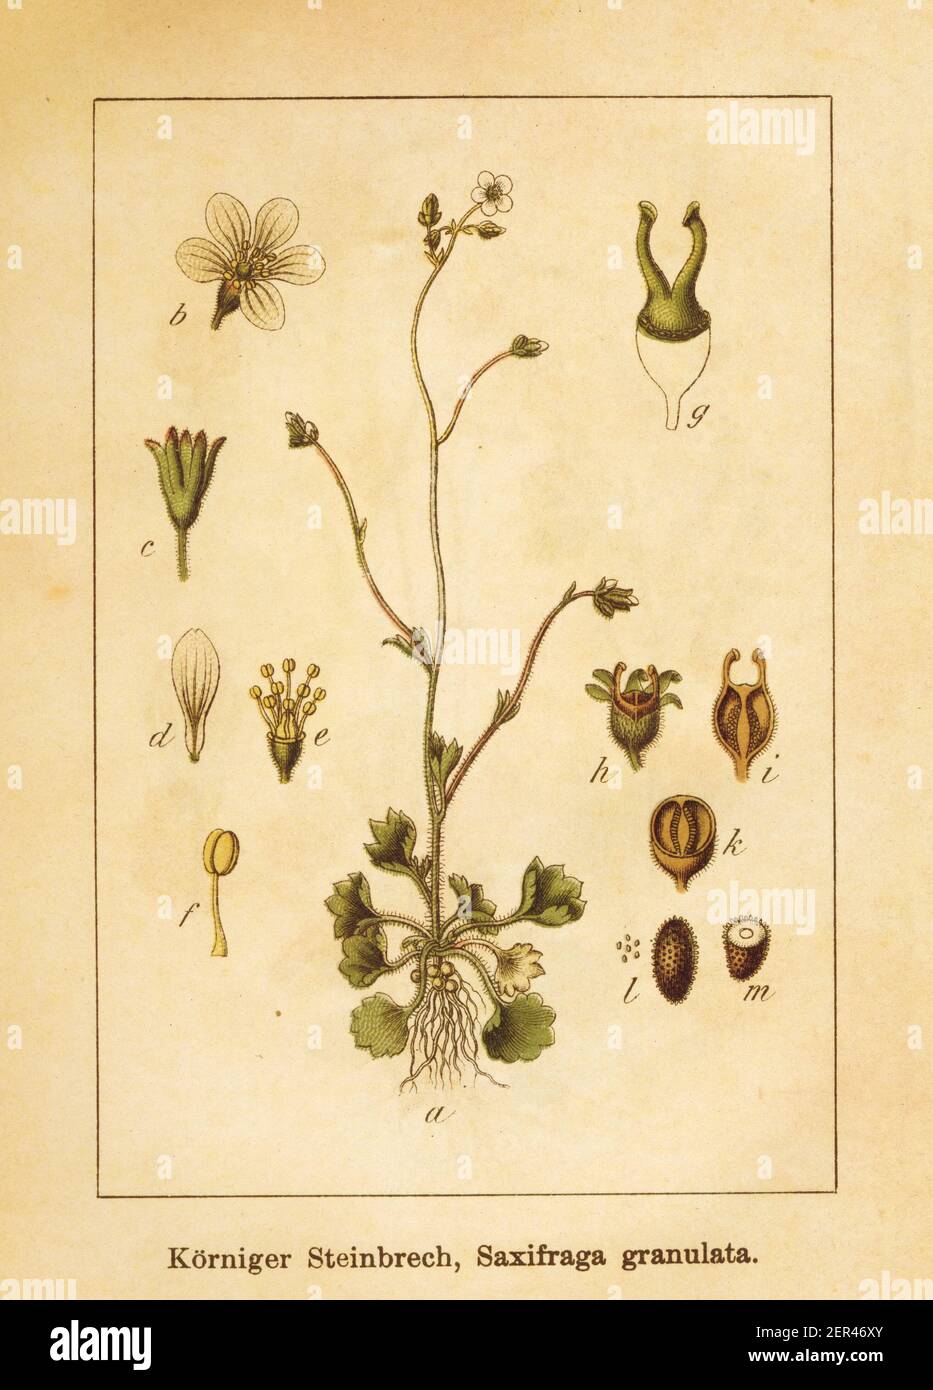 Antica illustrazione di una granulata sassifraga, conosciuta anche come sassifrago di prati. Inciso da Jacob Sturm (1771-1848) e pubblicato nel libro Deutschla Foto Stock